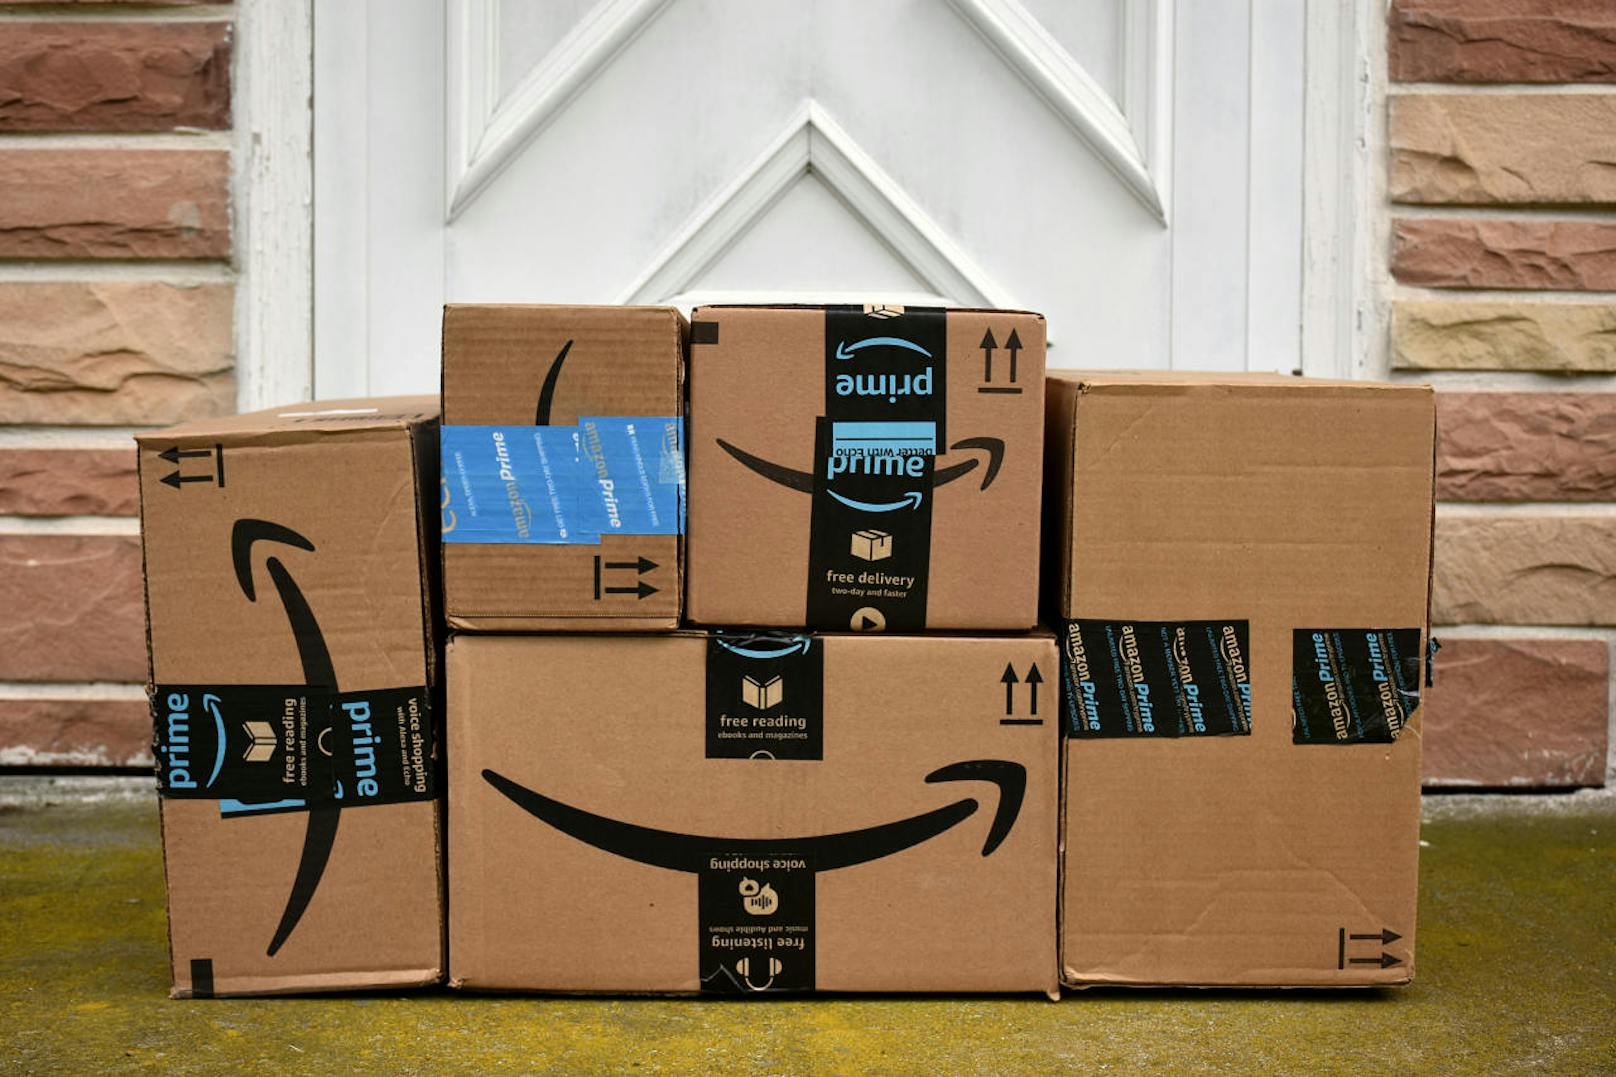 Beim Shopping auf Amazon achten Kunden oft auf die Bewertungen von Produkten.